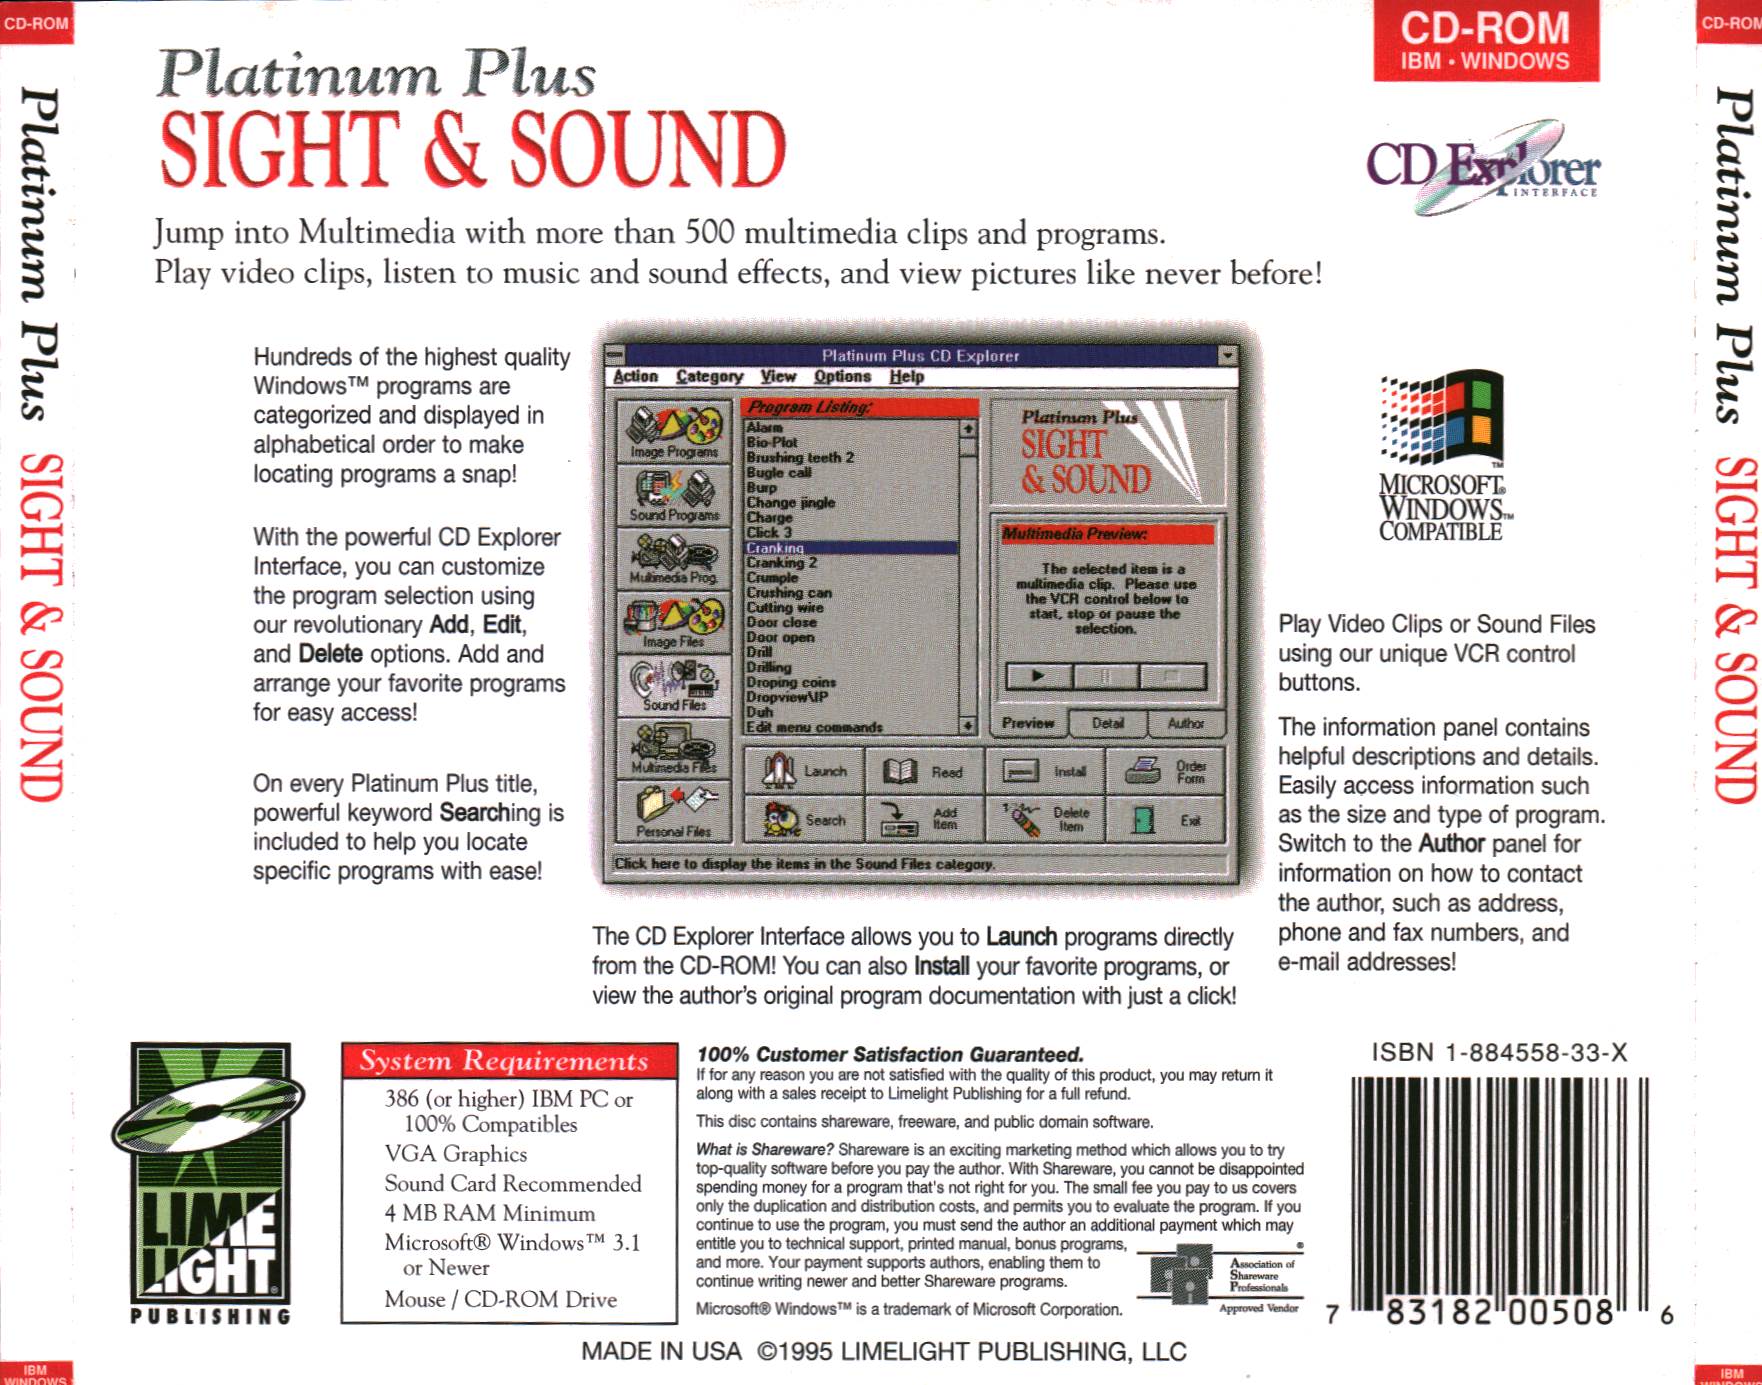 Sight & Sound Platinum Plus 1